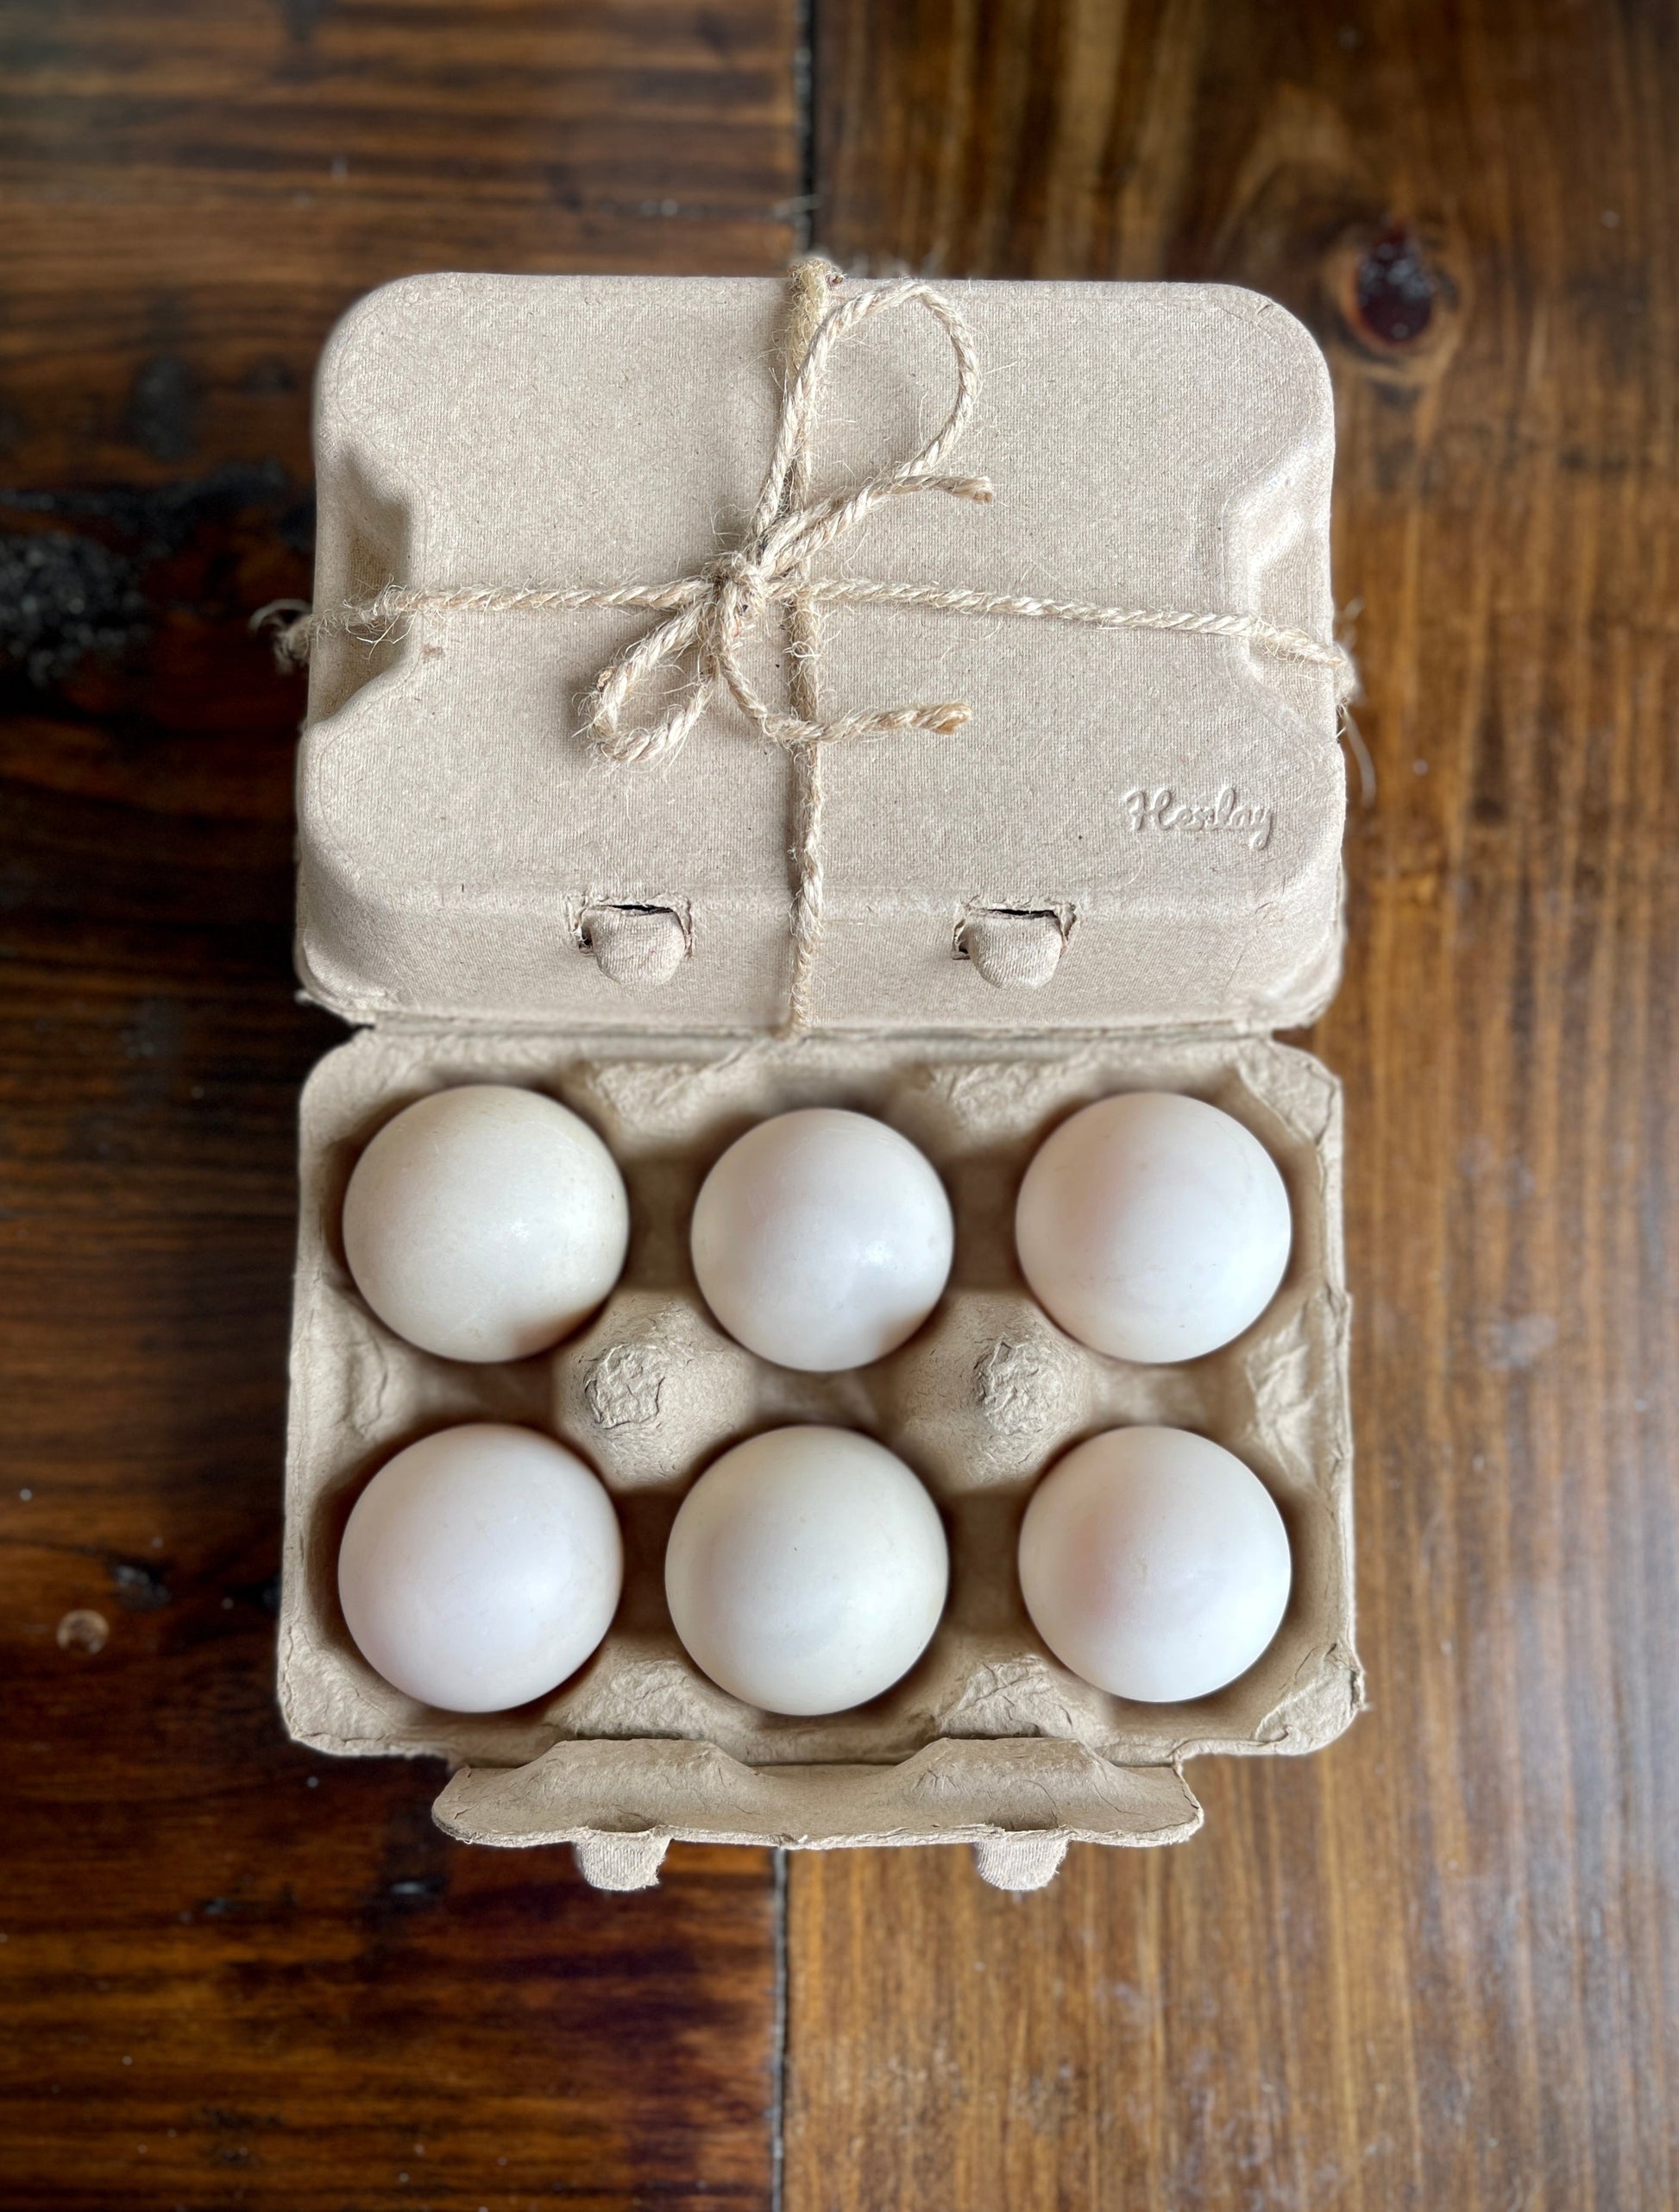 Henlay Duck Egg Cartons Holds Half Dozen Jumbo Eggs From Your